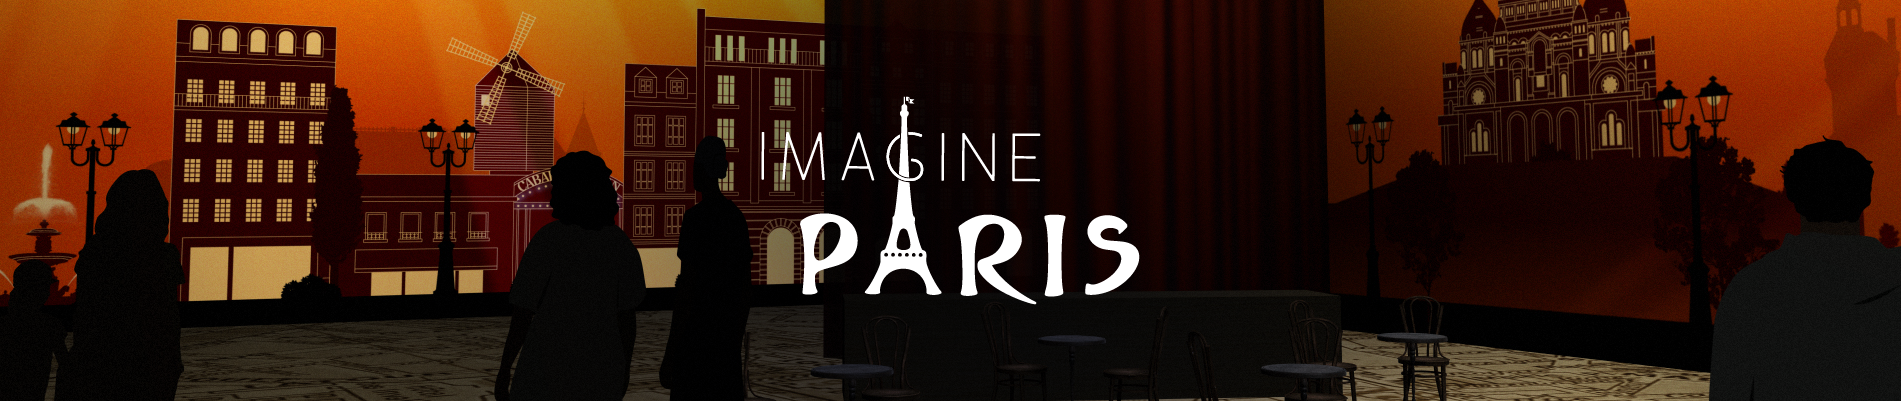 Imagine Paris